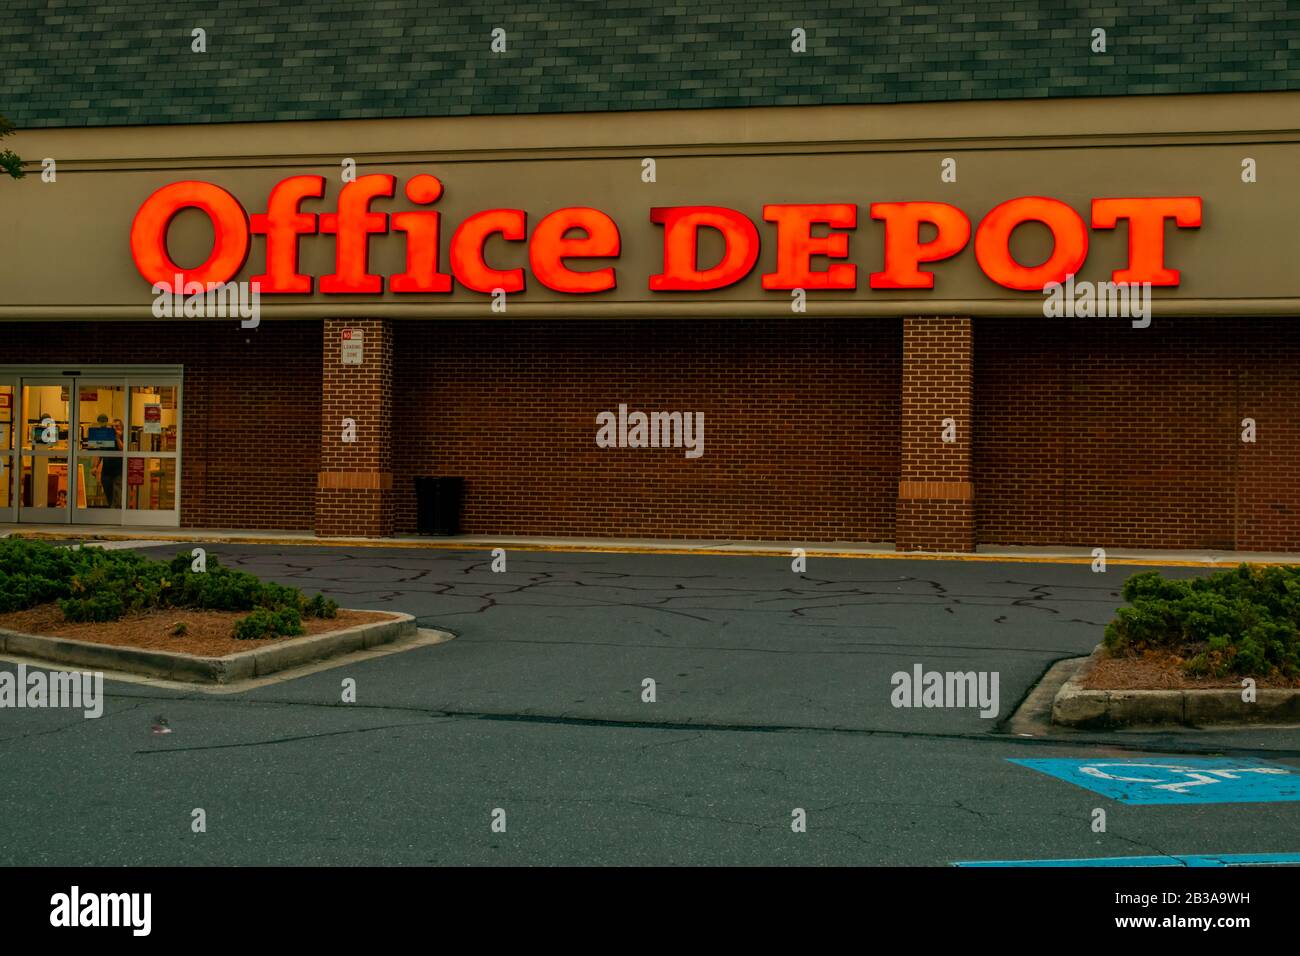 Charlotte, NC/USA - 10. Mai 2019: Mittlere horizontale Aufnahme von "Office Depot" beleuchtete Markenbriefen an der Fassade des Gebäudes kurz nach Sonnenuntergang. Stockfoto